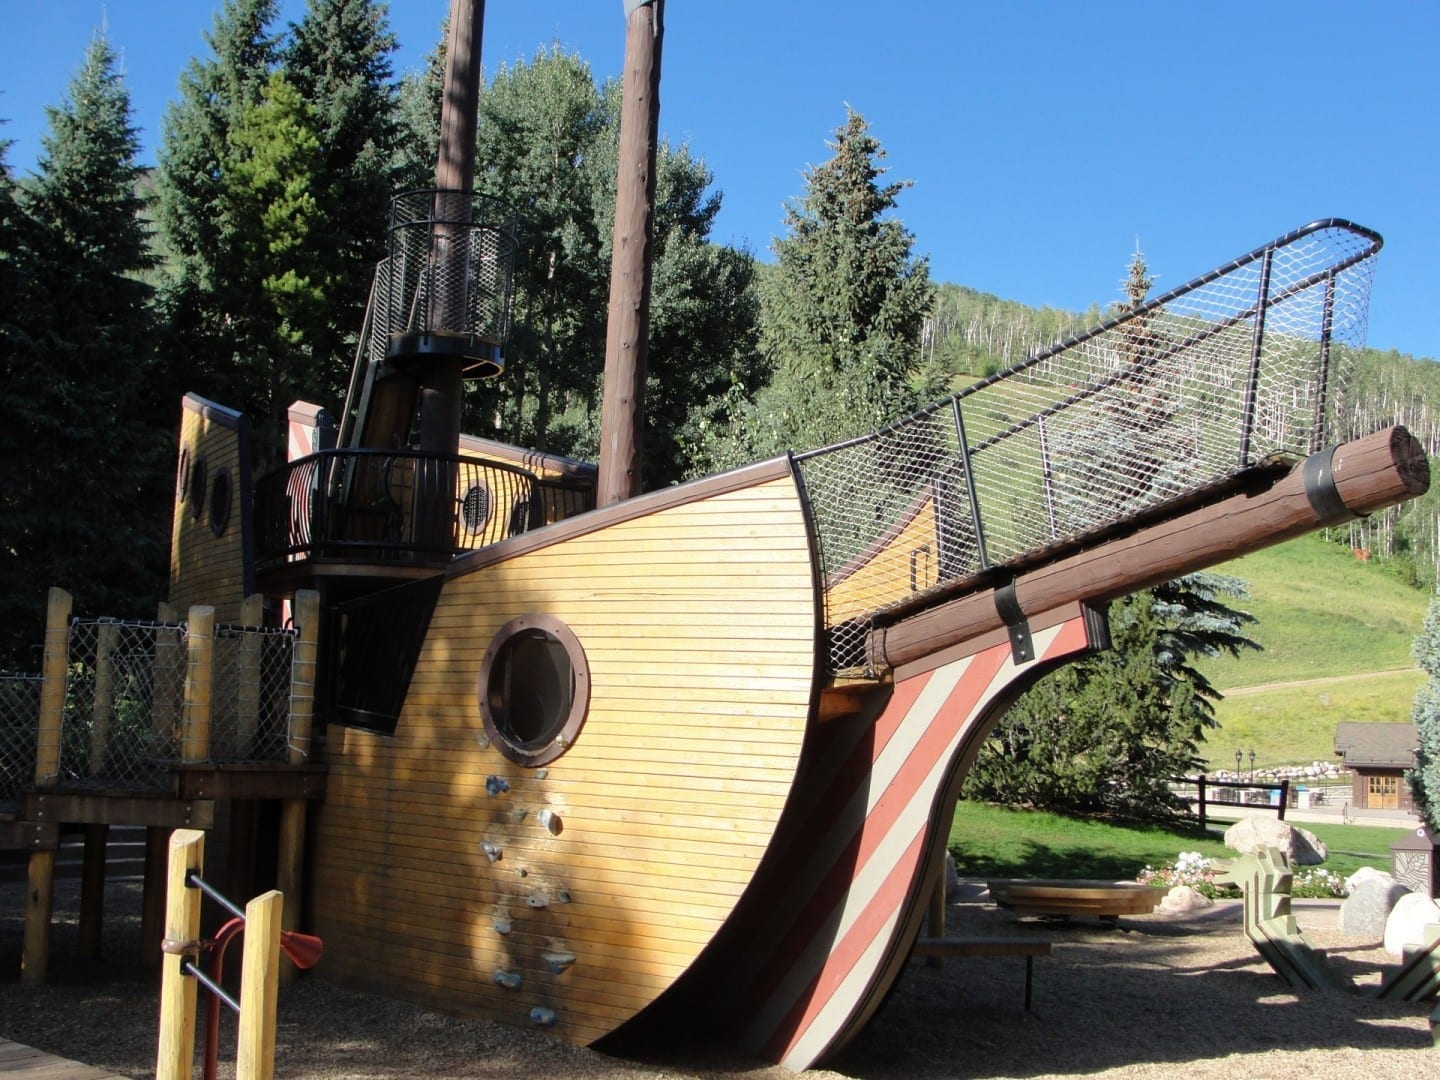 Situado en la base de las pistas de esquí, el Parque del Barco Pirata ha deleitado a generaciones de niños en Vail. Vail CO Estados Unidos